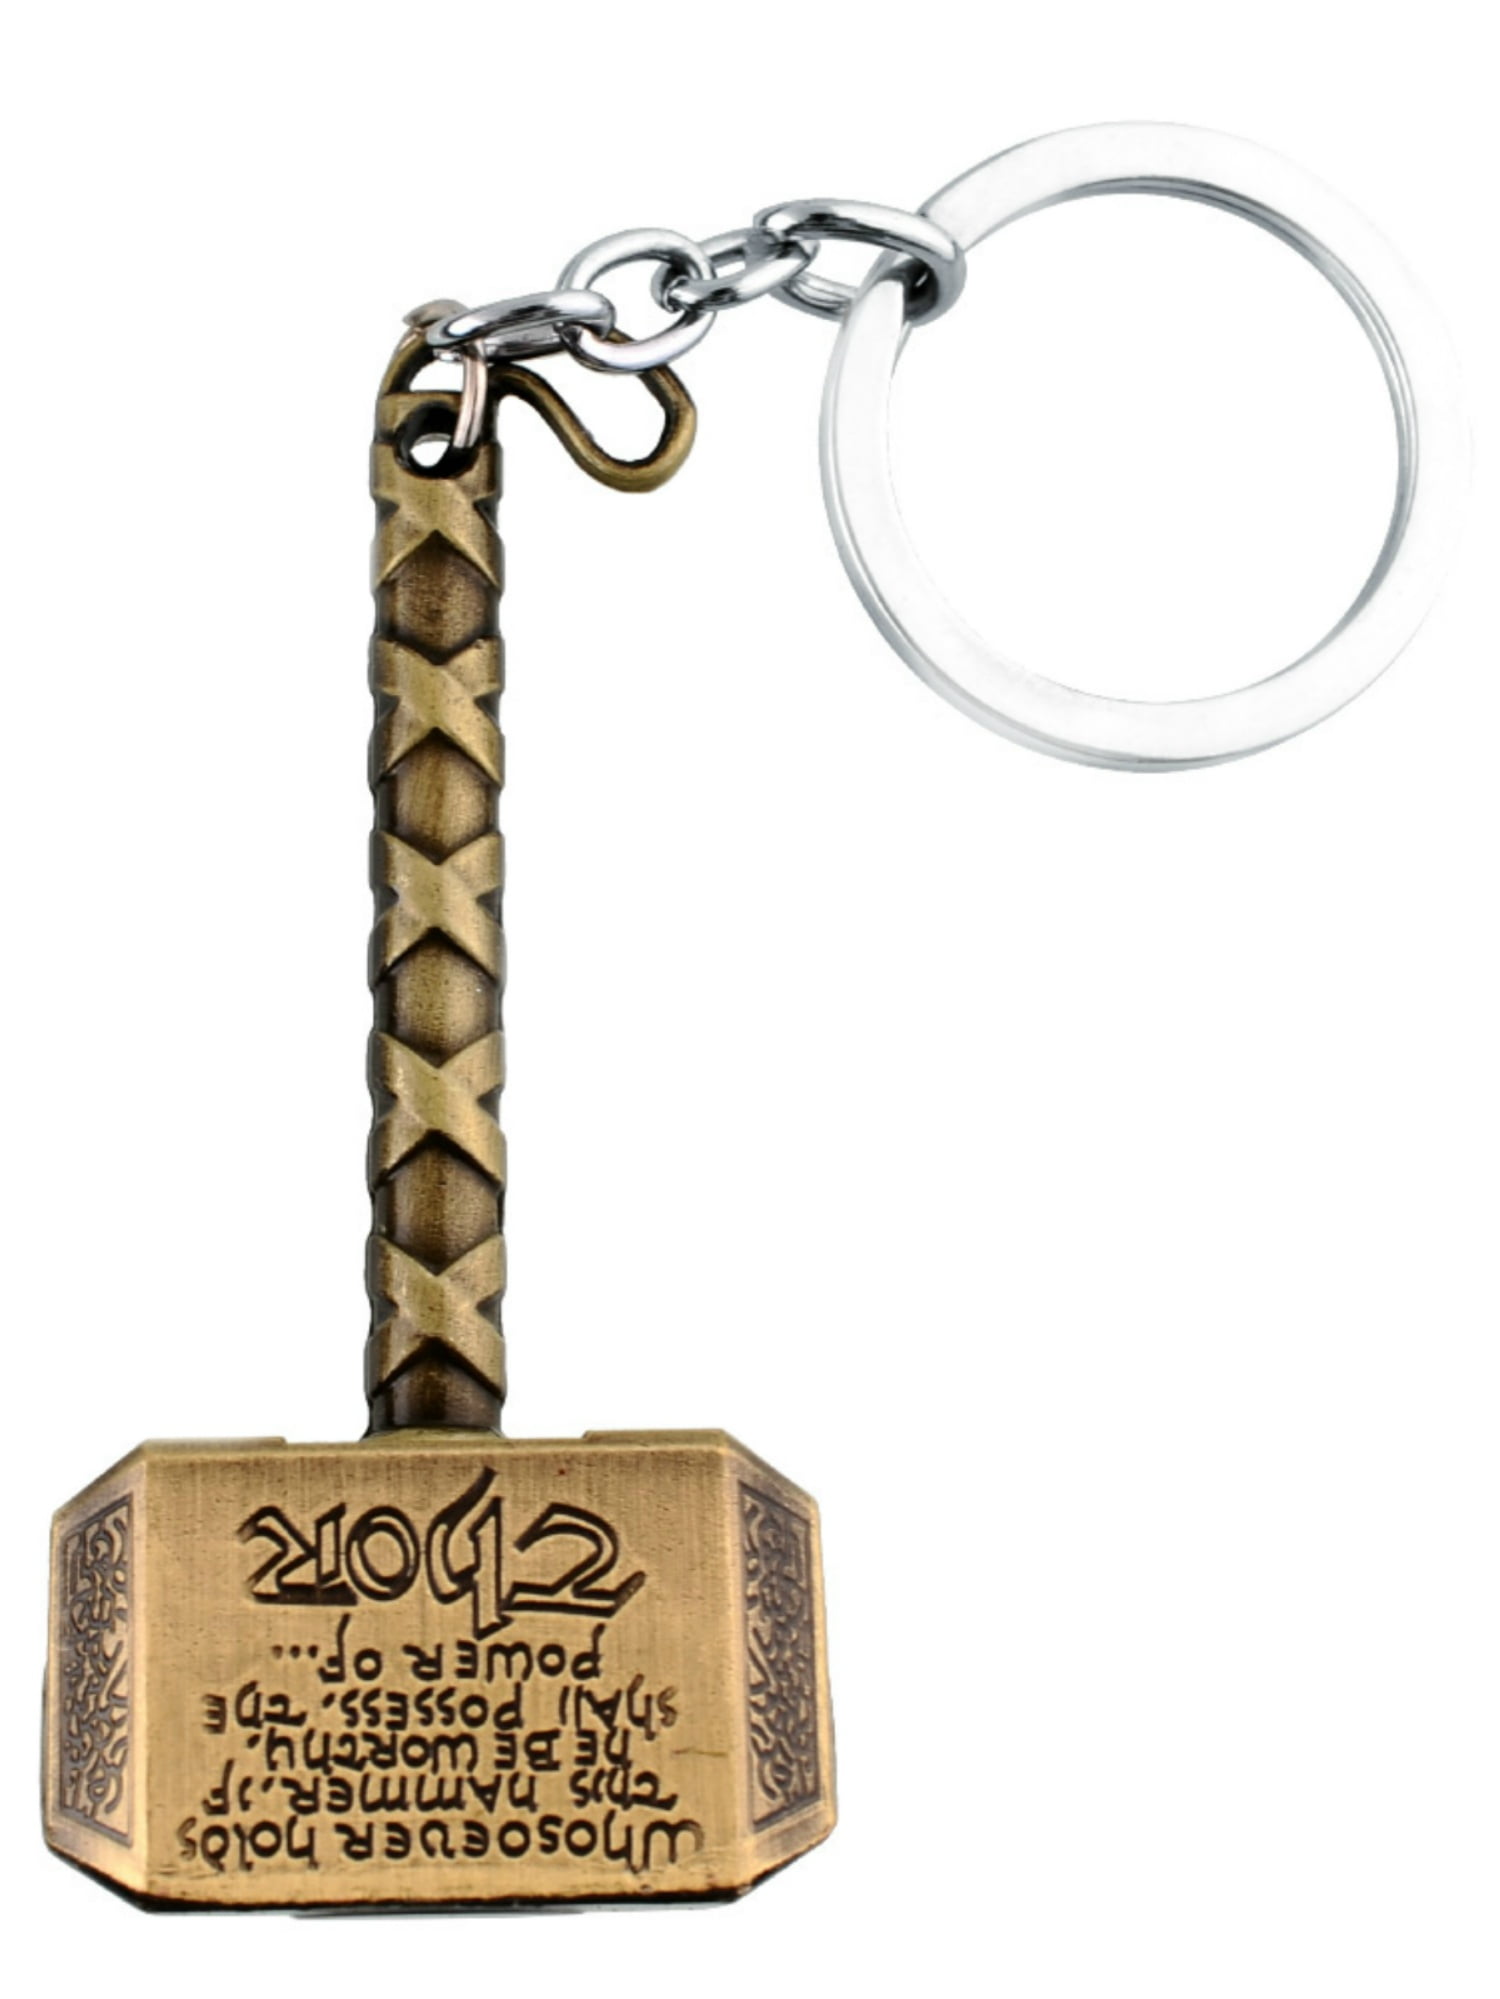 Marvel  The Avengers Thor's Hammer  Mjolnir Pewter Metal keychain colour gold 